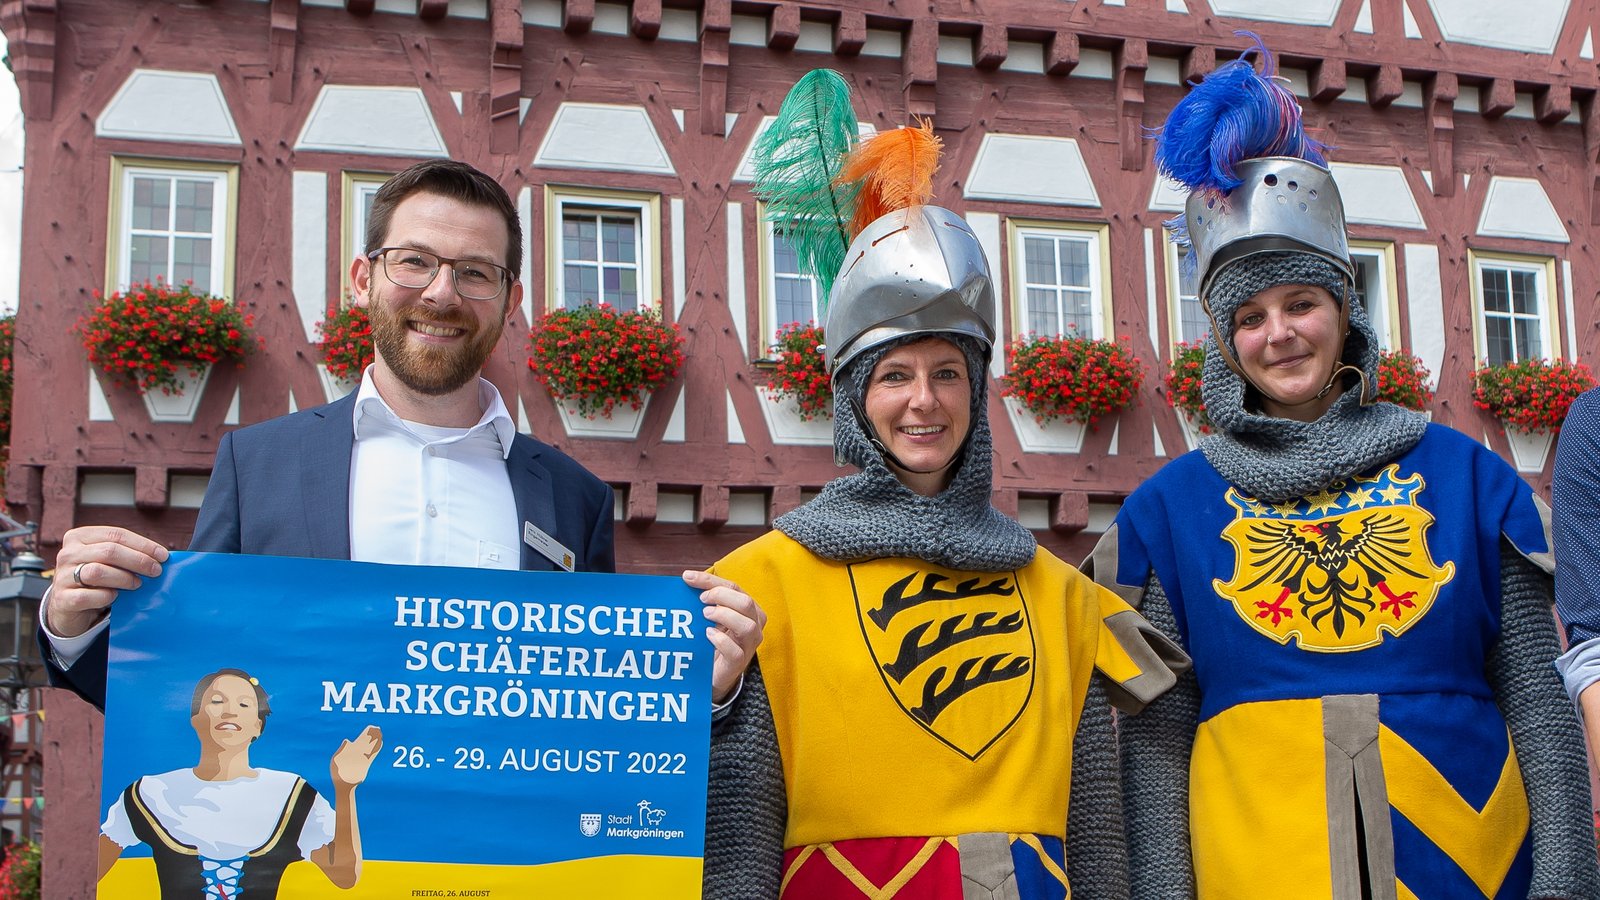 Markgröningens Bürgermeister Jens Hübner mit Teilnehmern aus der Festzugsgruppe Graf zu Gröningen, die zum Schäferlauf neue Trachten bekommen haben. Foto: Bürkle